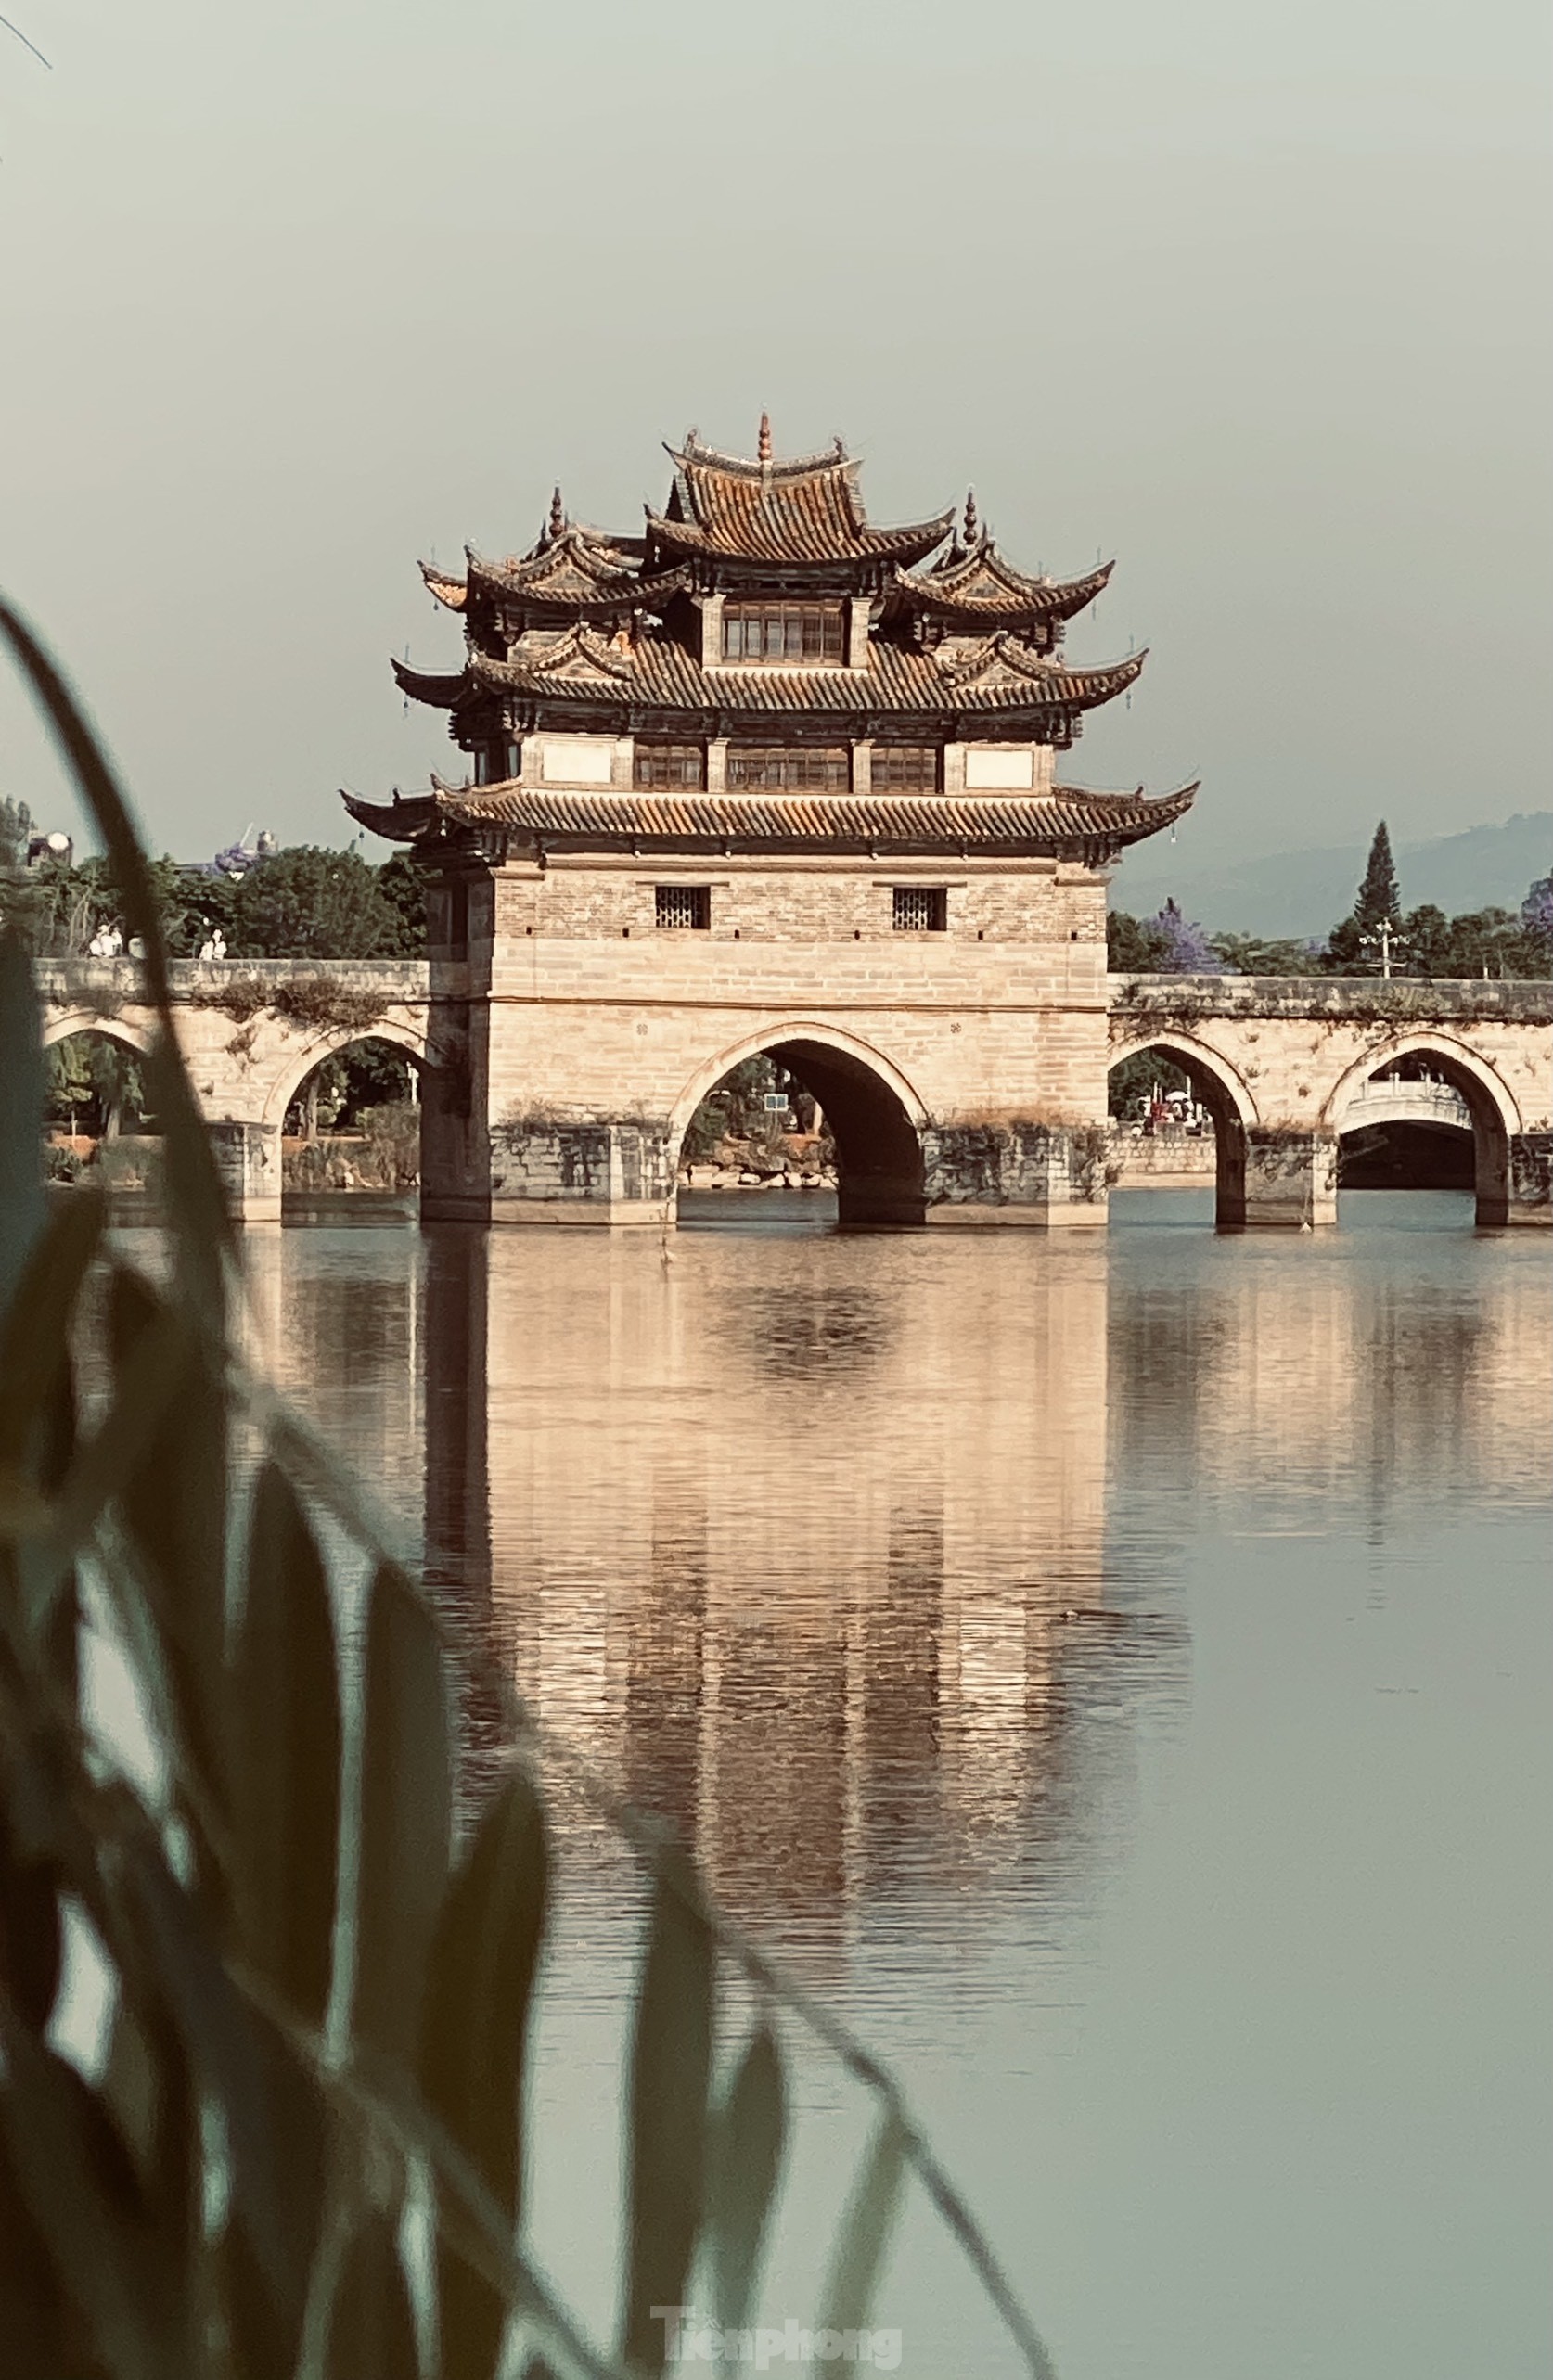 Chiêm ngưỡng vẻ đẹp kiến trúc của thành cổ Trung Quốc ảnh 4